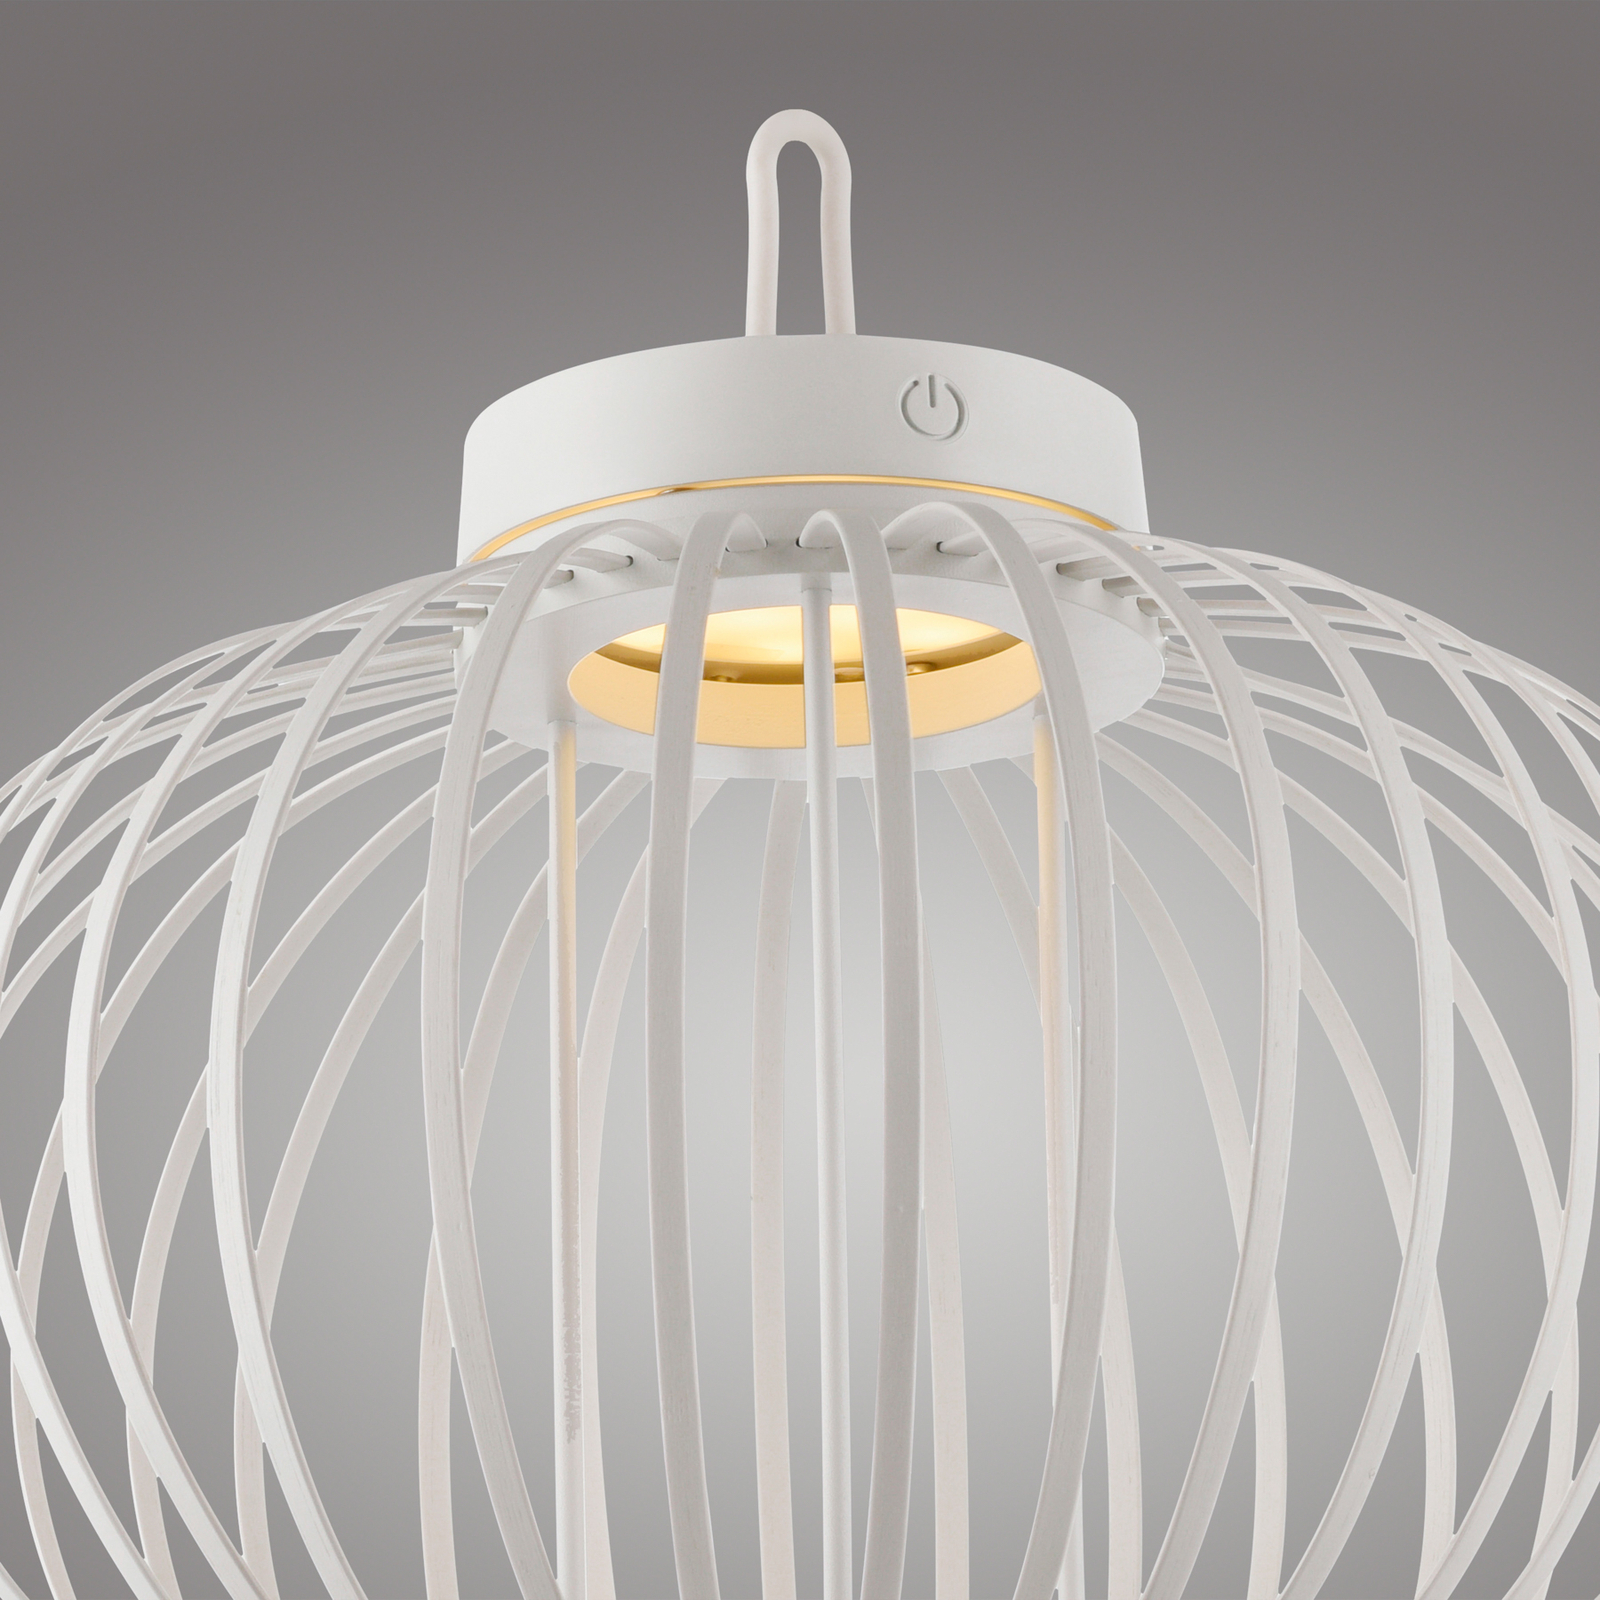 SAMO SVJETLO. Akuba LED baterijska stolna lampa, bijela, 33 cm, bambus